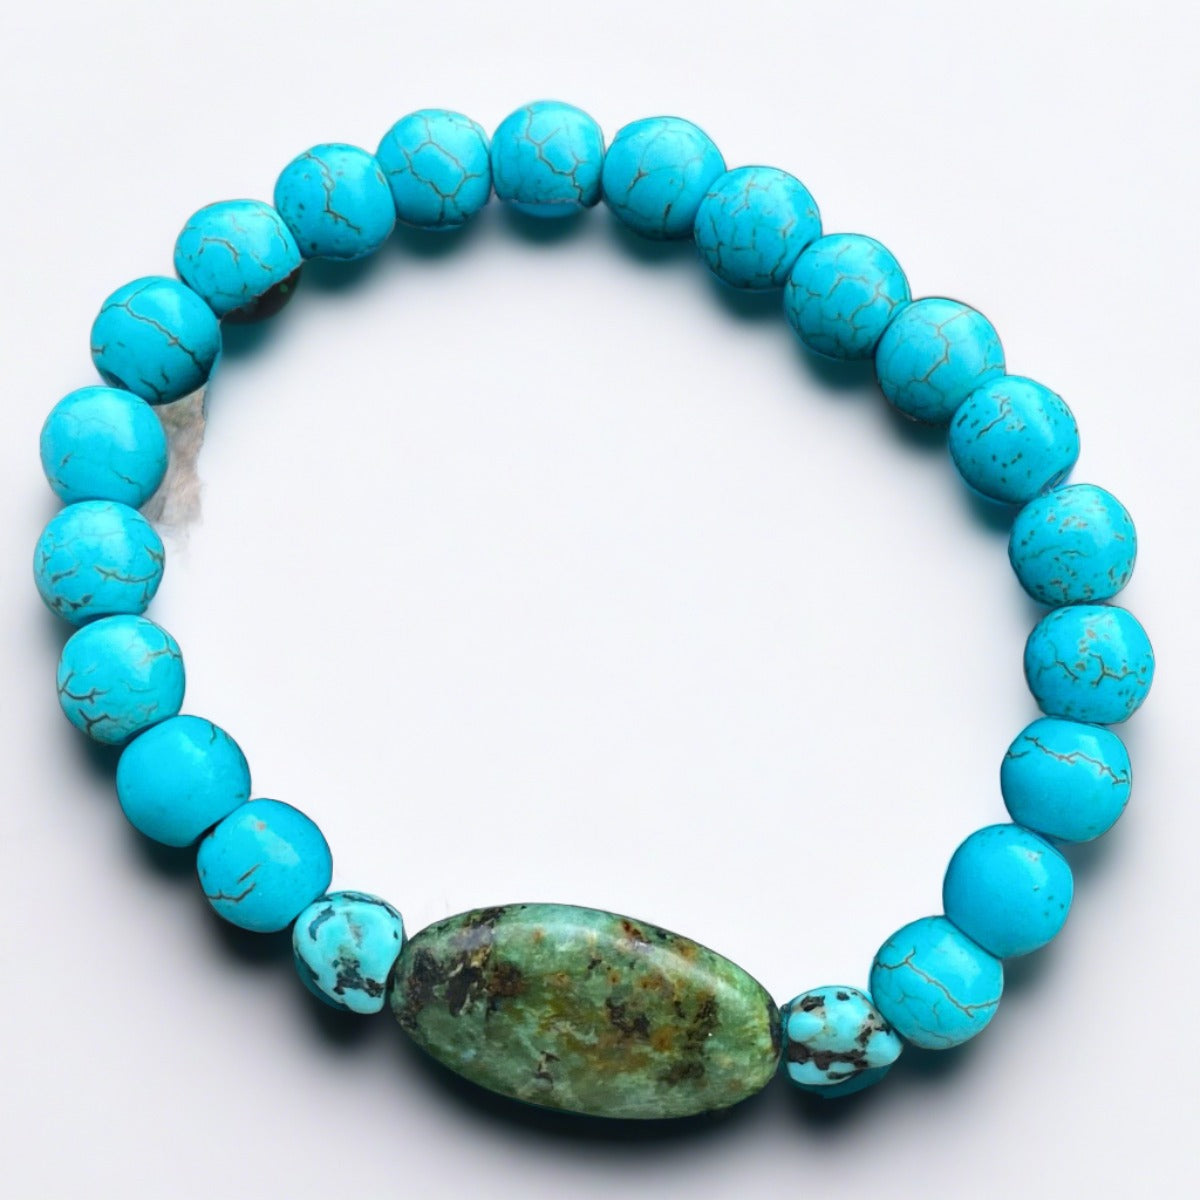 Meditation inspired turquoise and jasper bracelet